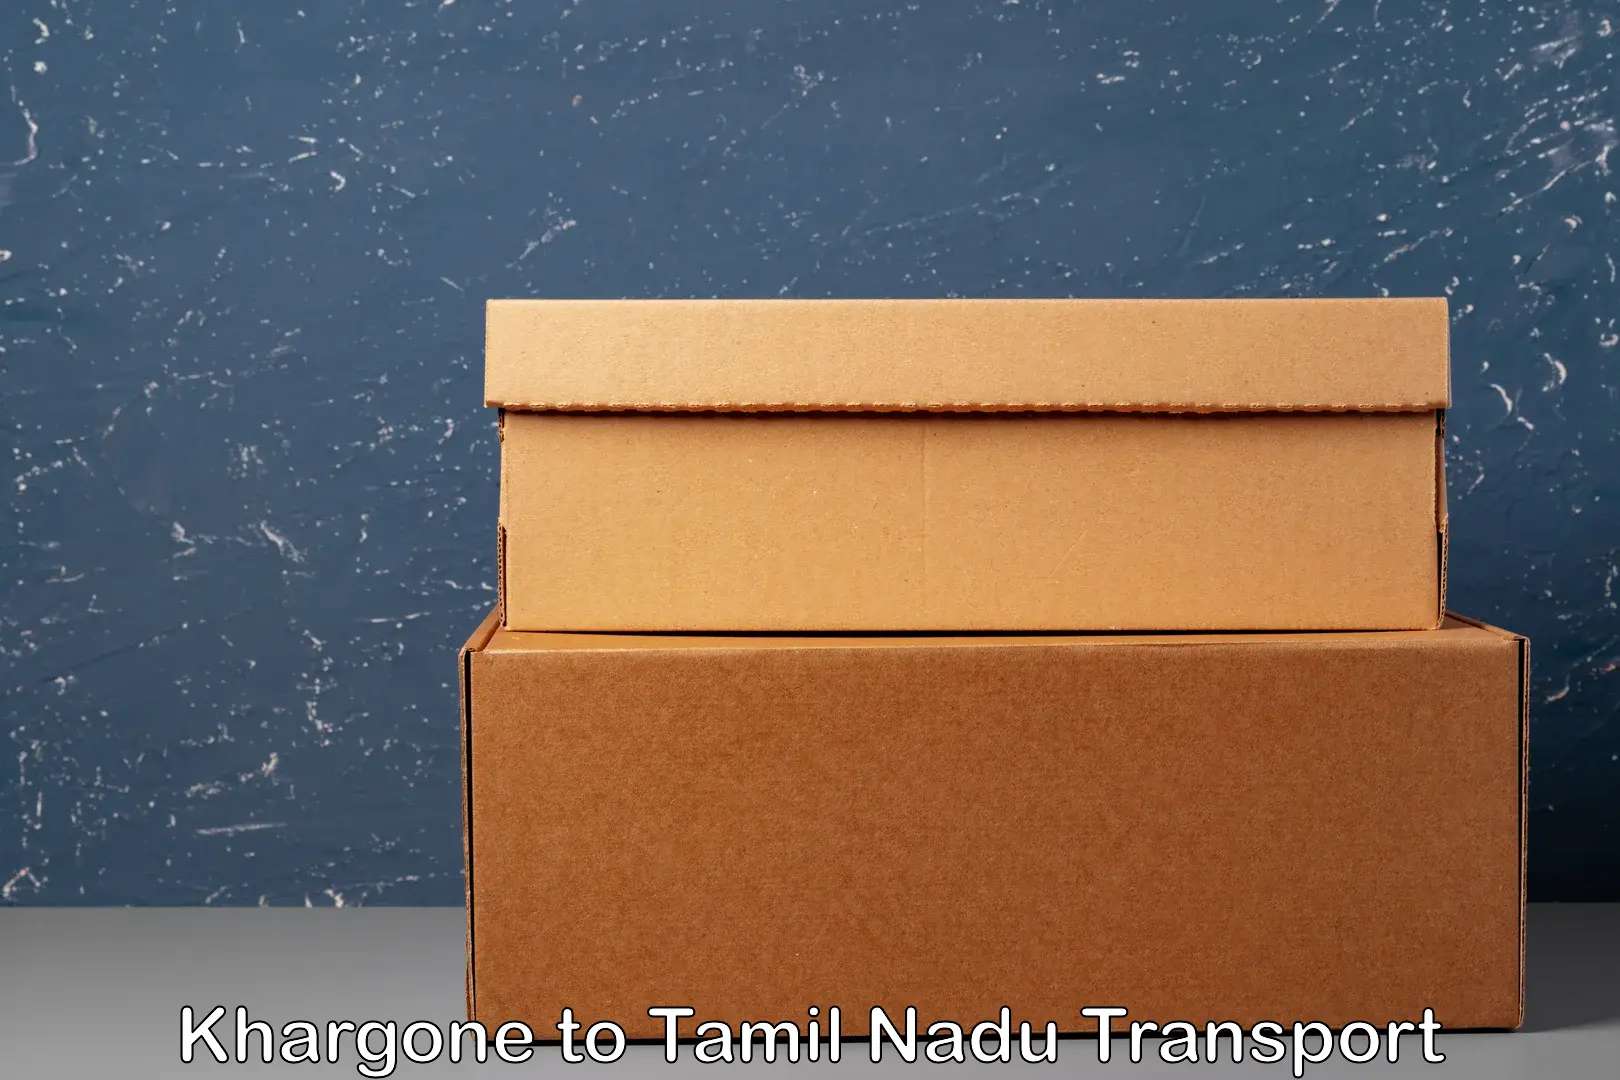 Door to door transport services Khargone to Tamil Nadu